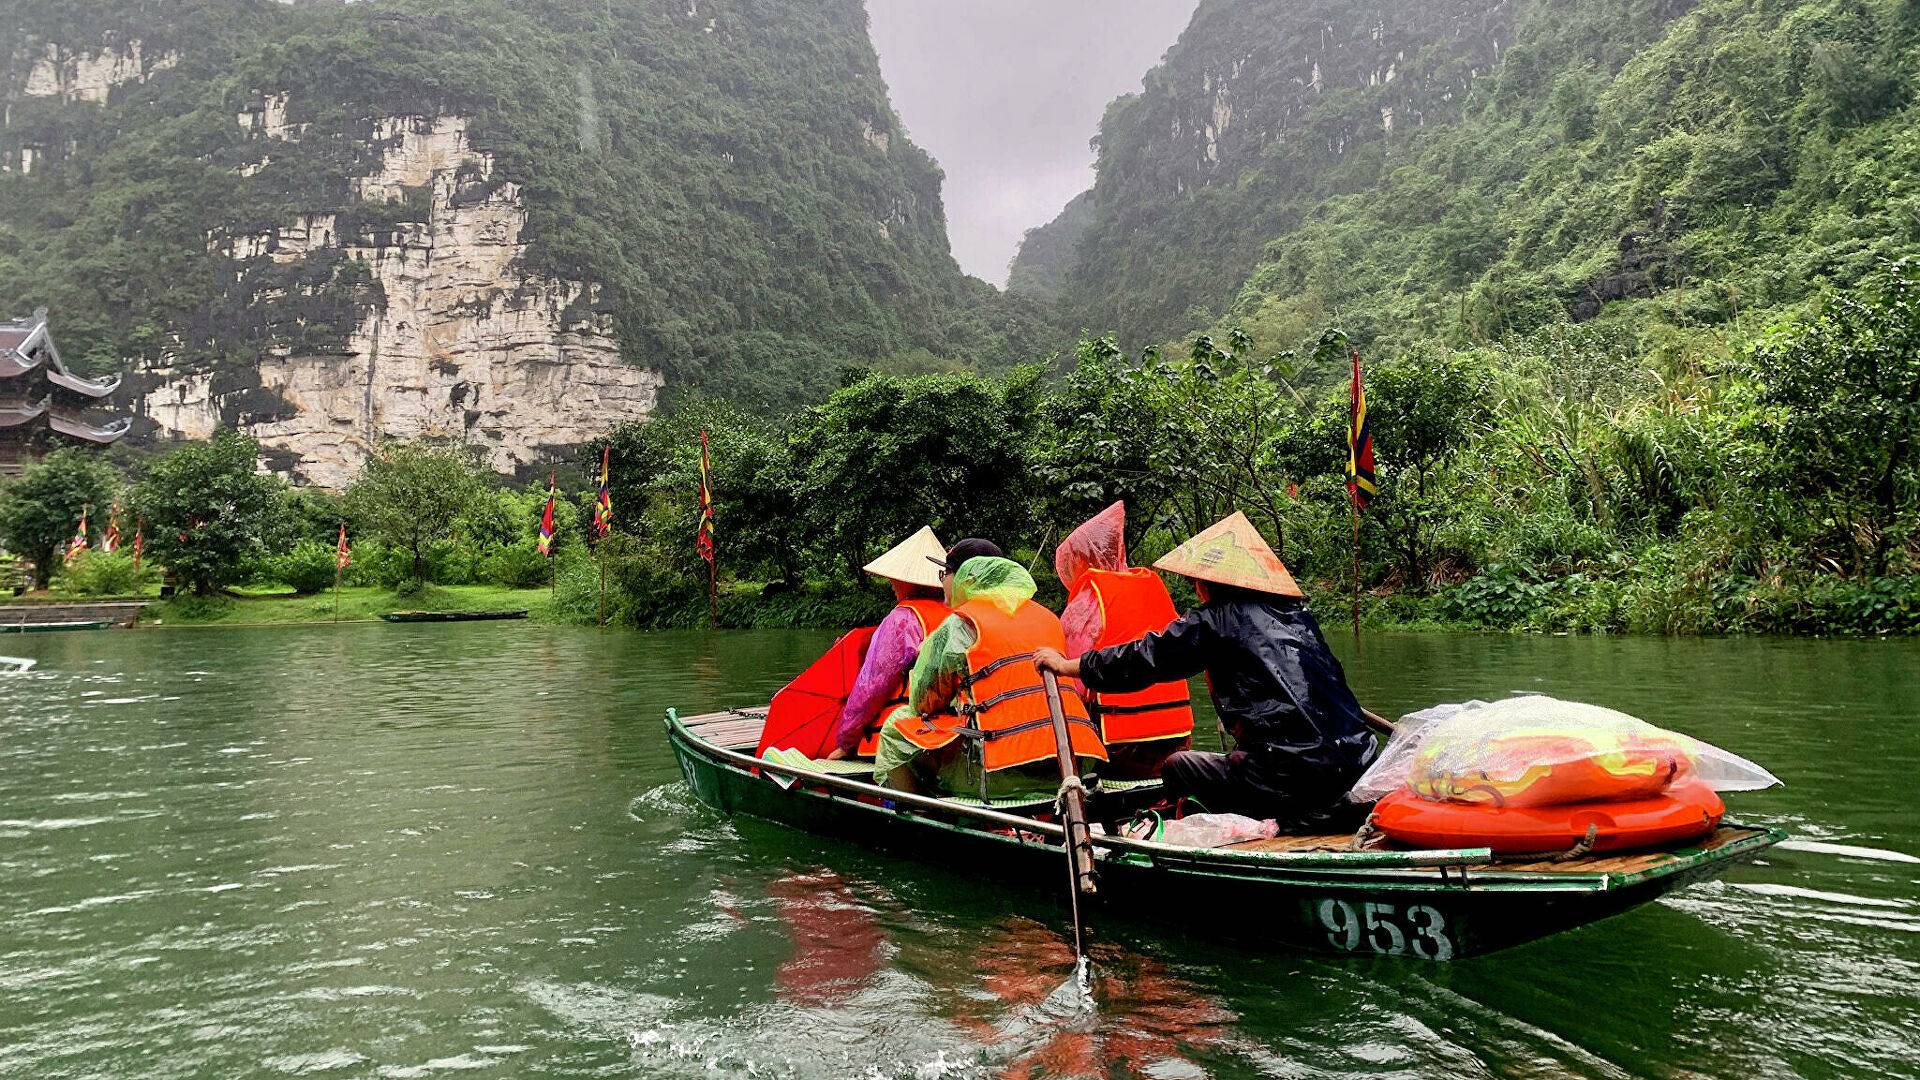 Правила въезда во вьетнам: открыта ли граница для туристов, можно ли лететь россиянам 2022